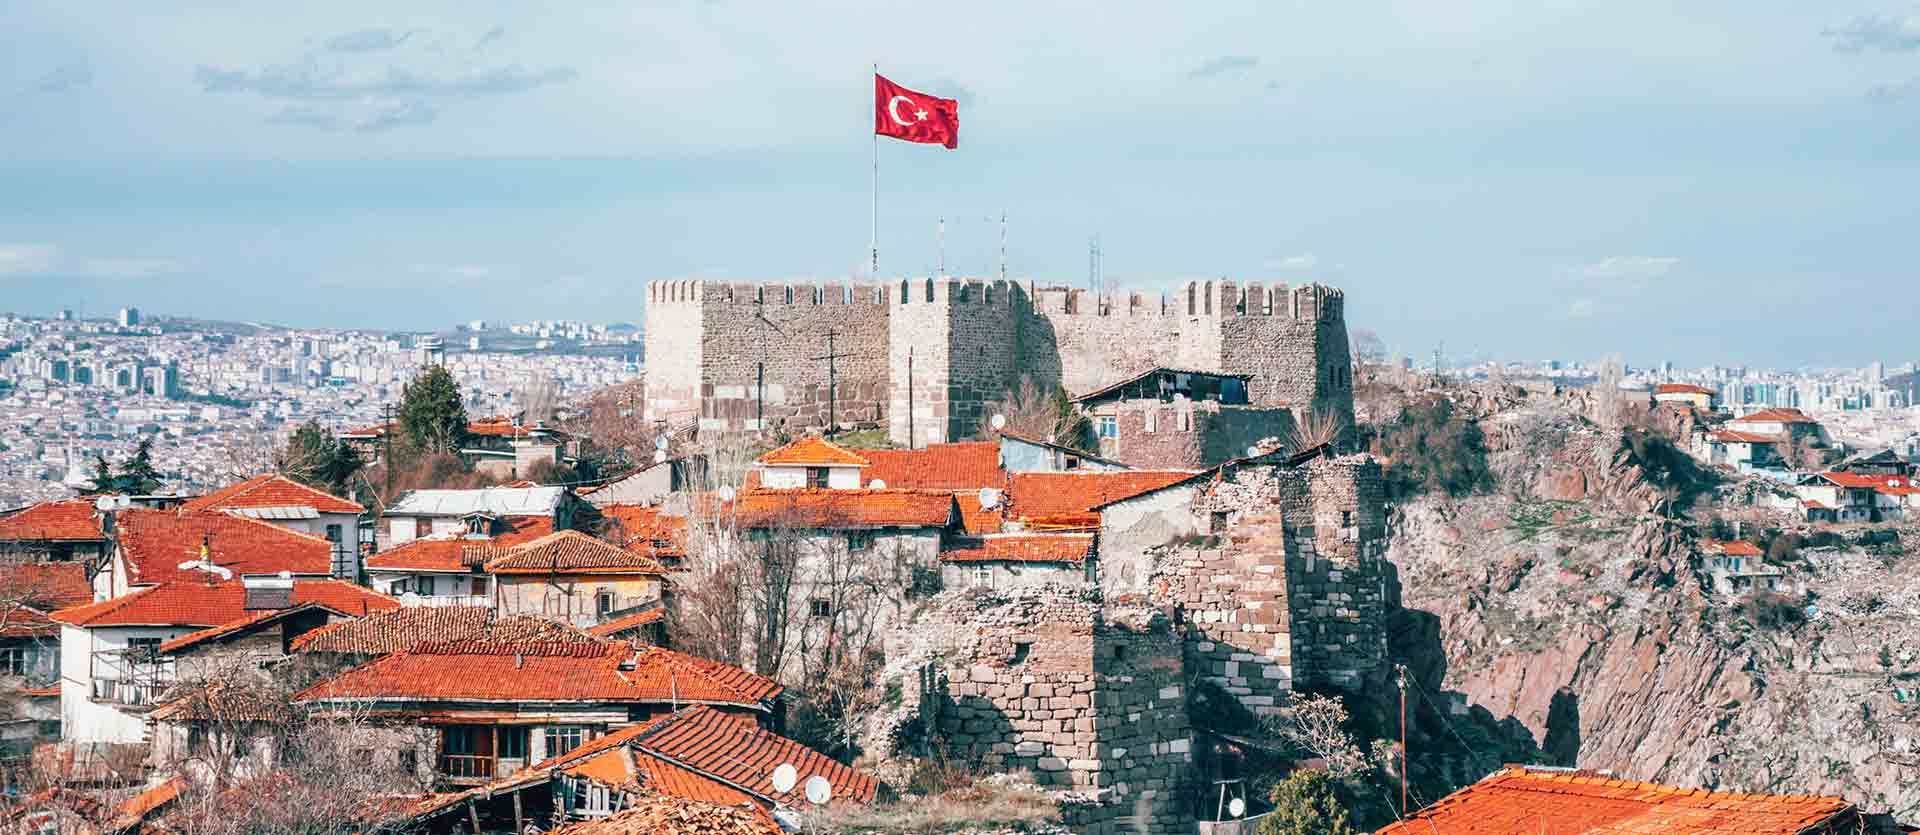 Ankara Castle <span class="iconos separador"></span> Ankara <span class="iconos separador"></span> Turkey